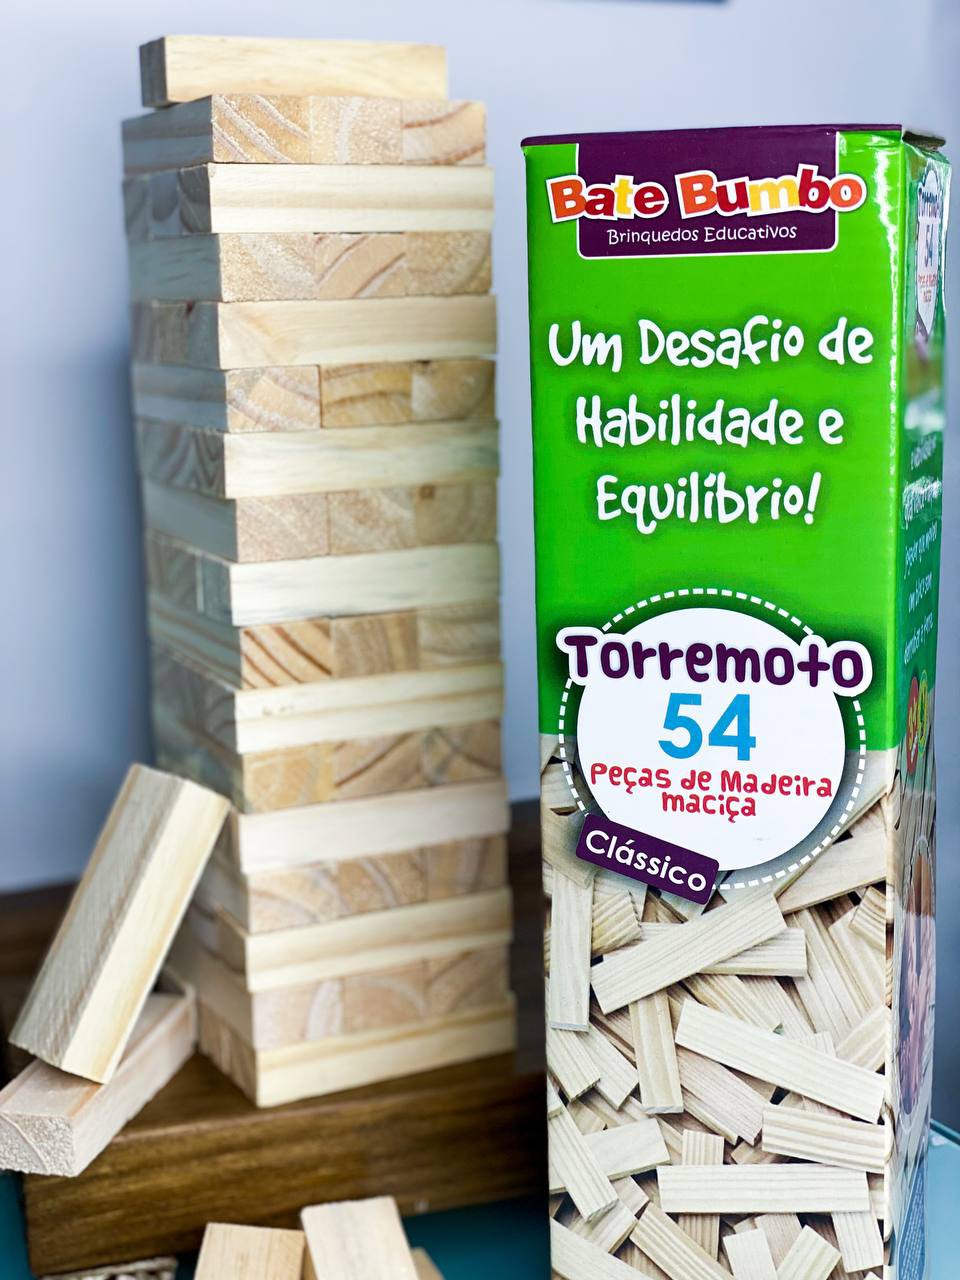 Ludo Clássico Brinquedo Educativo de Madeira - Jogo Tradicional